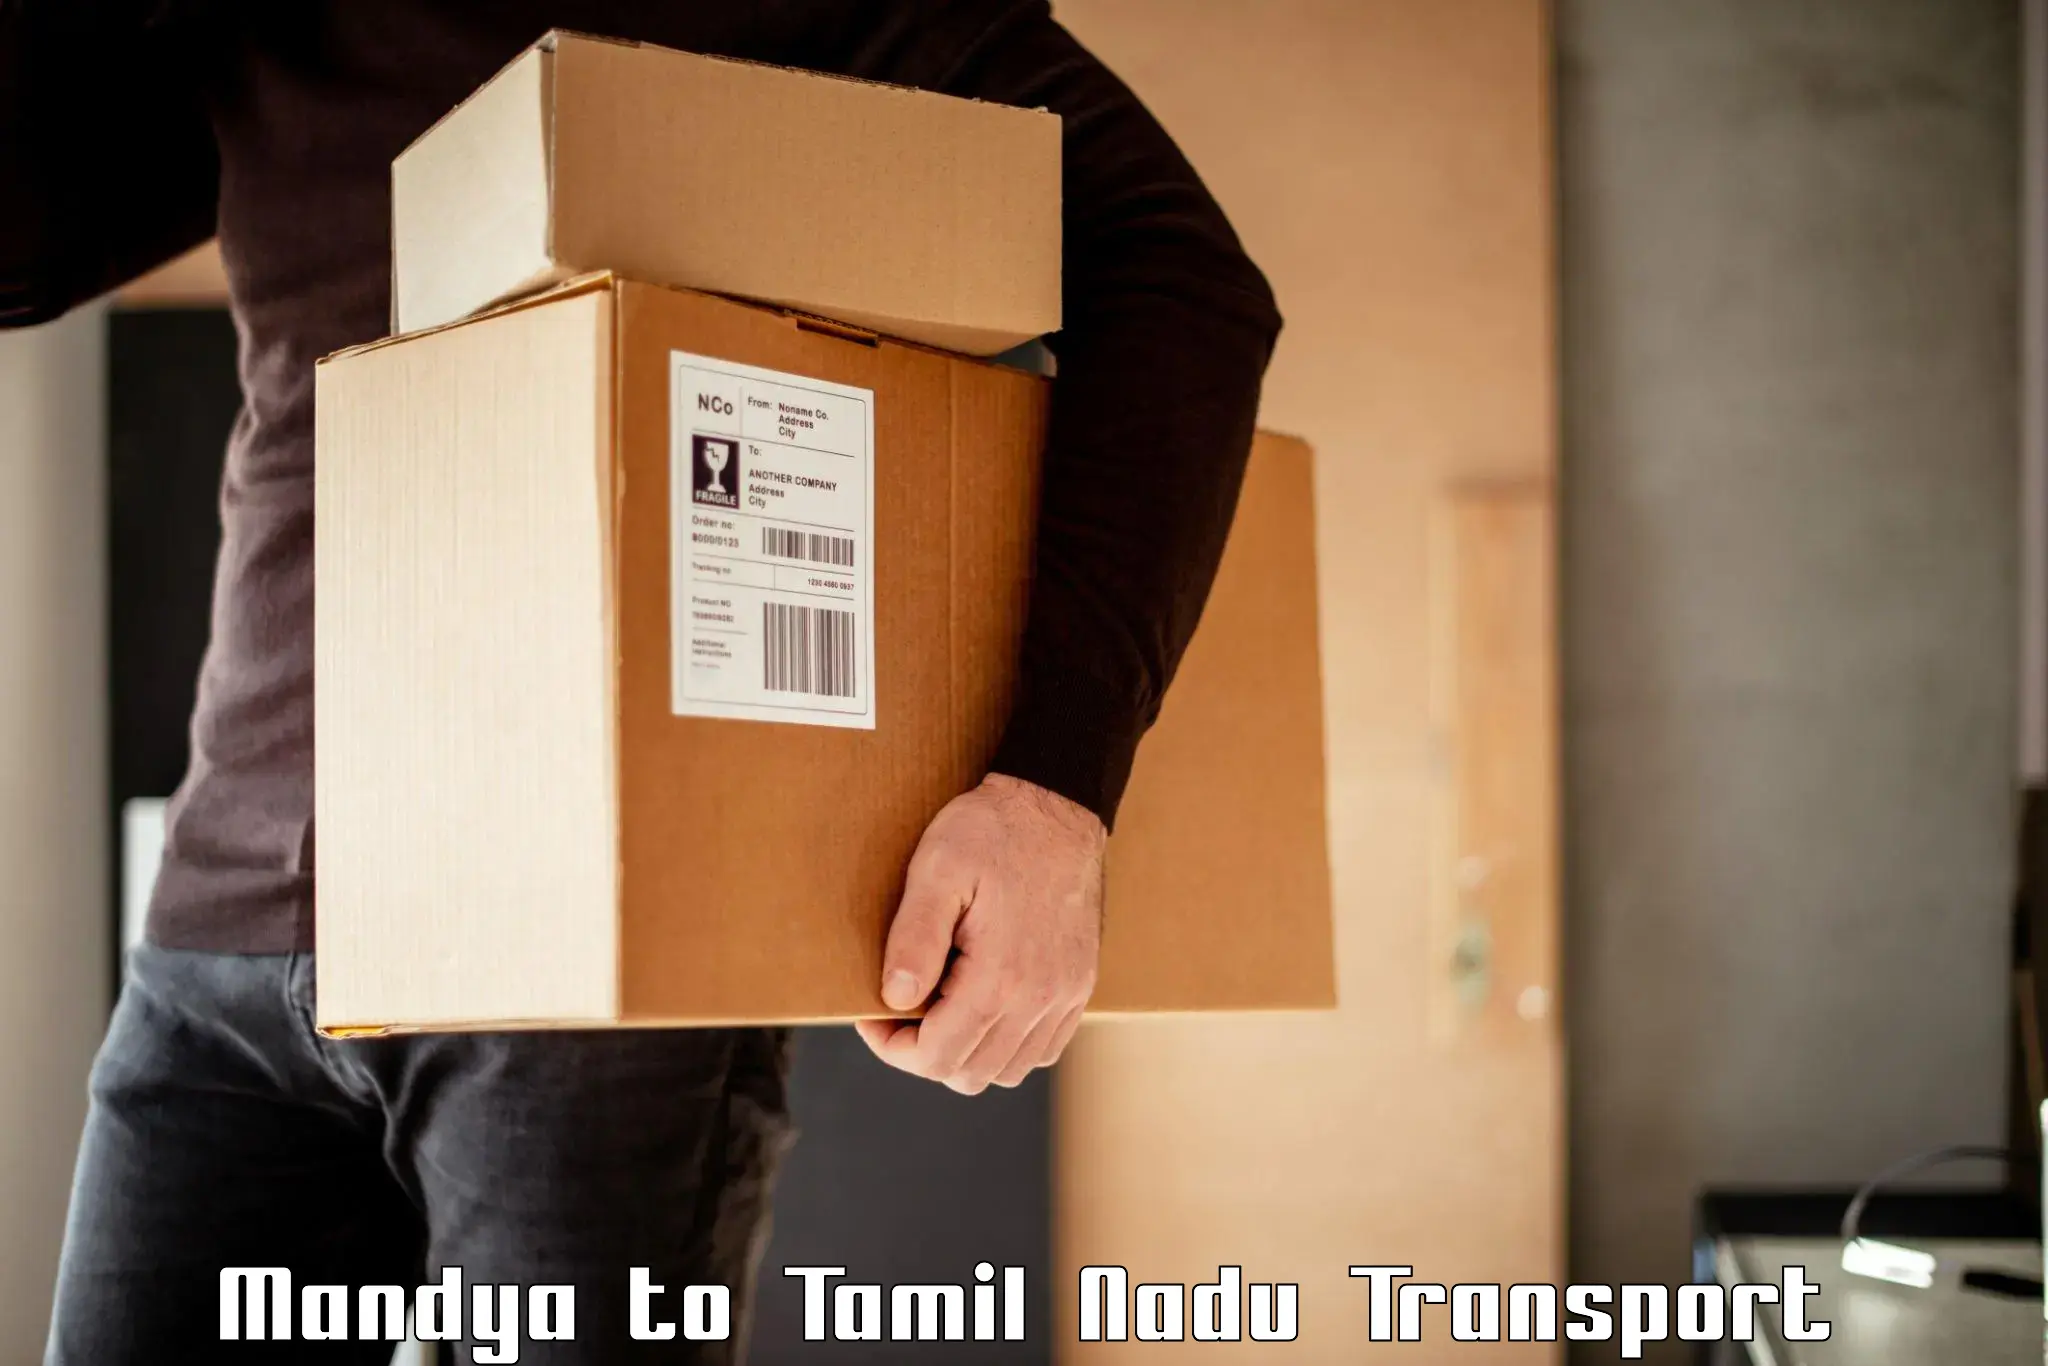 Pick up transport service Mandya to Tiruvannamalai